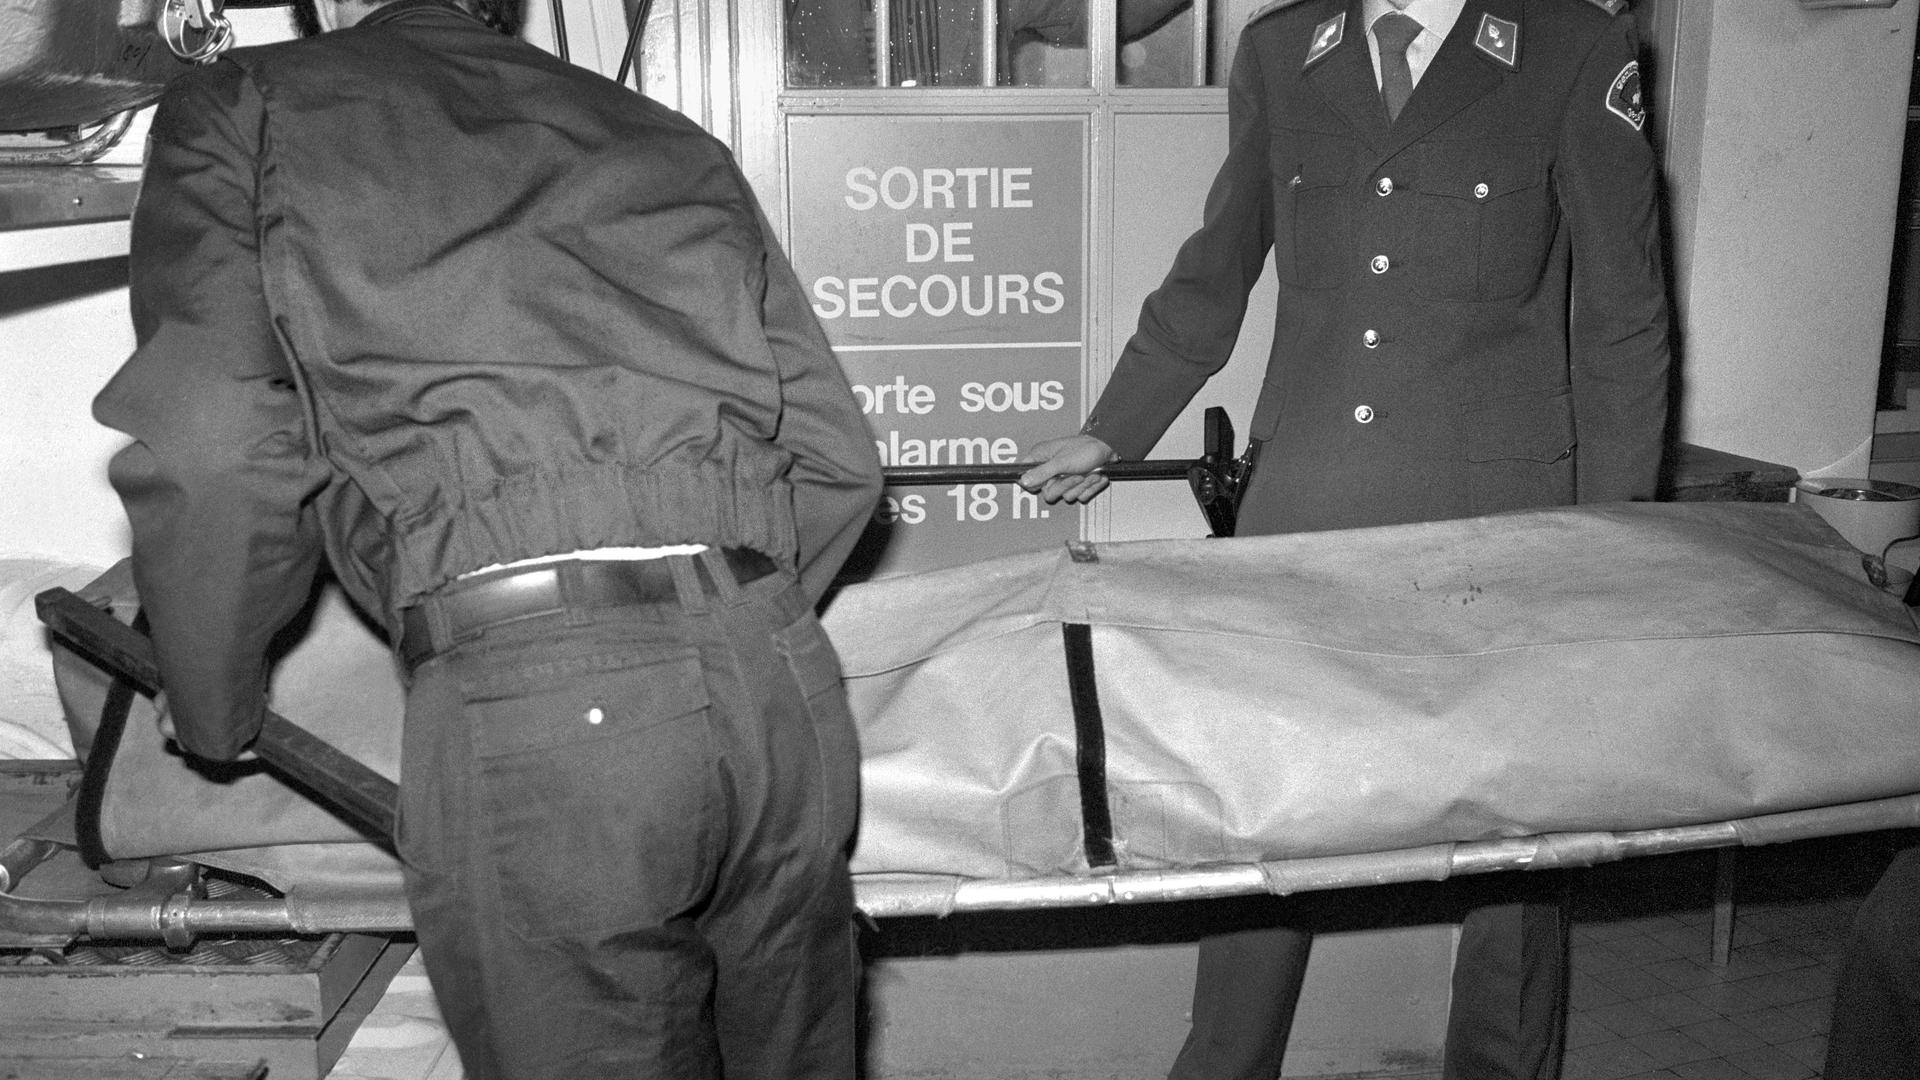 ARCHIV - Der Leichnam von Uwe Barschel wird am 11. Oktober 1987 auf einer Trage aus dem Hotel Beau-Rivage in Genf abtransportiert. Der ehemalige schleswig-holsteinische Ministerpräsident Barschel (CDU) wurde tot in der Badewanne seines Hotelzimmers aufgefunden. Foto: Keystone (zu dpa «Der Fall Barschel wird vom Polit-Krimi zum rasanten TV-Thriller») +++ dpa-Bildfunk +++